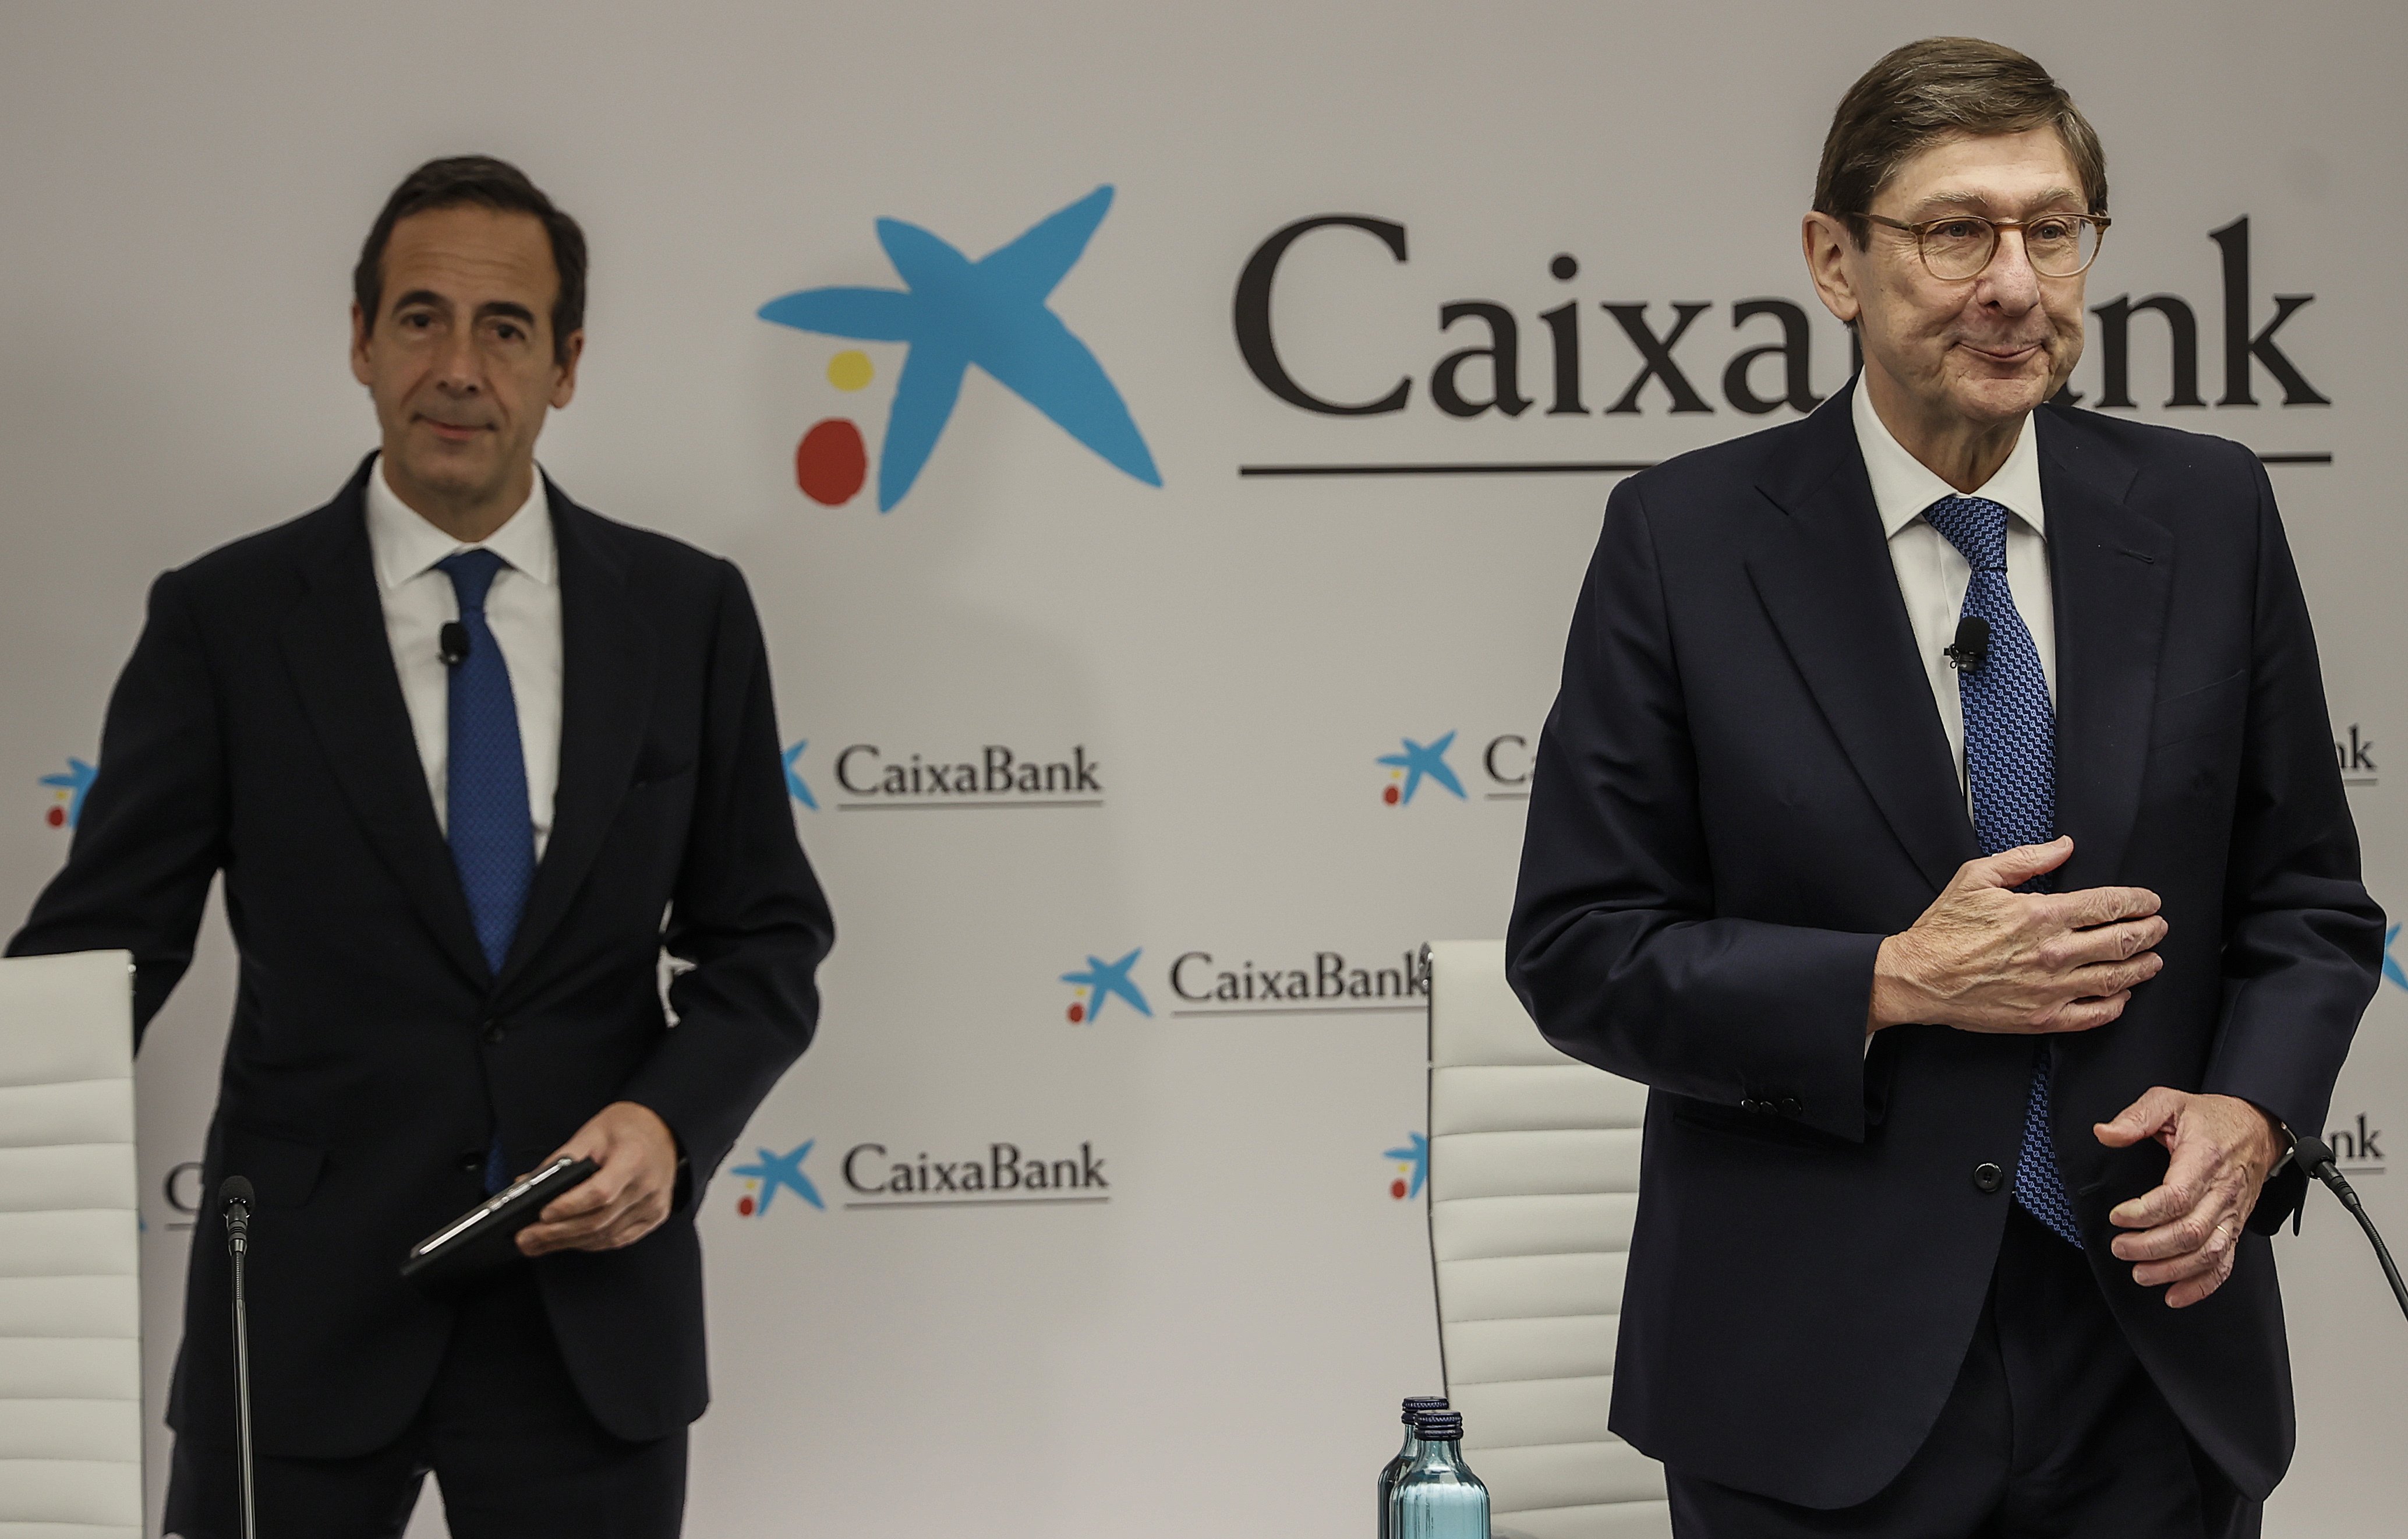 Goirigolzarri y Gortázar subirán su sueldo un 5% tras ganar 6 millones en CaixaBank